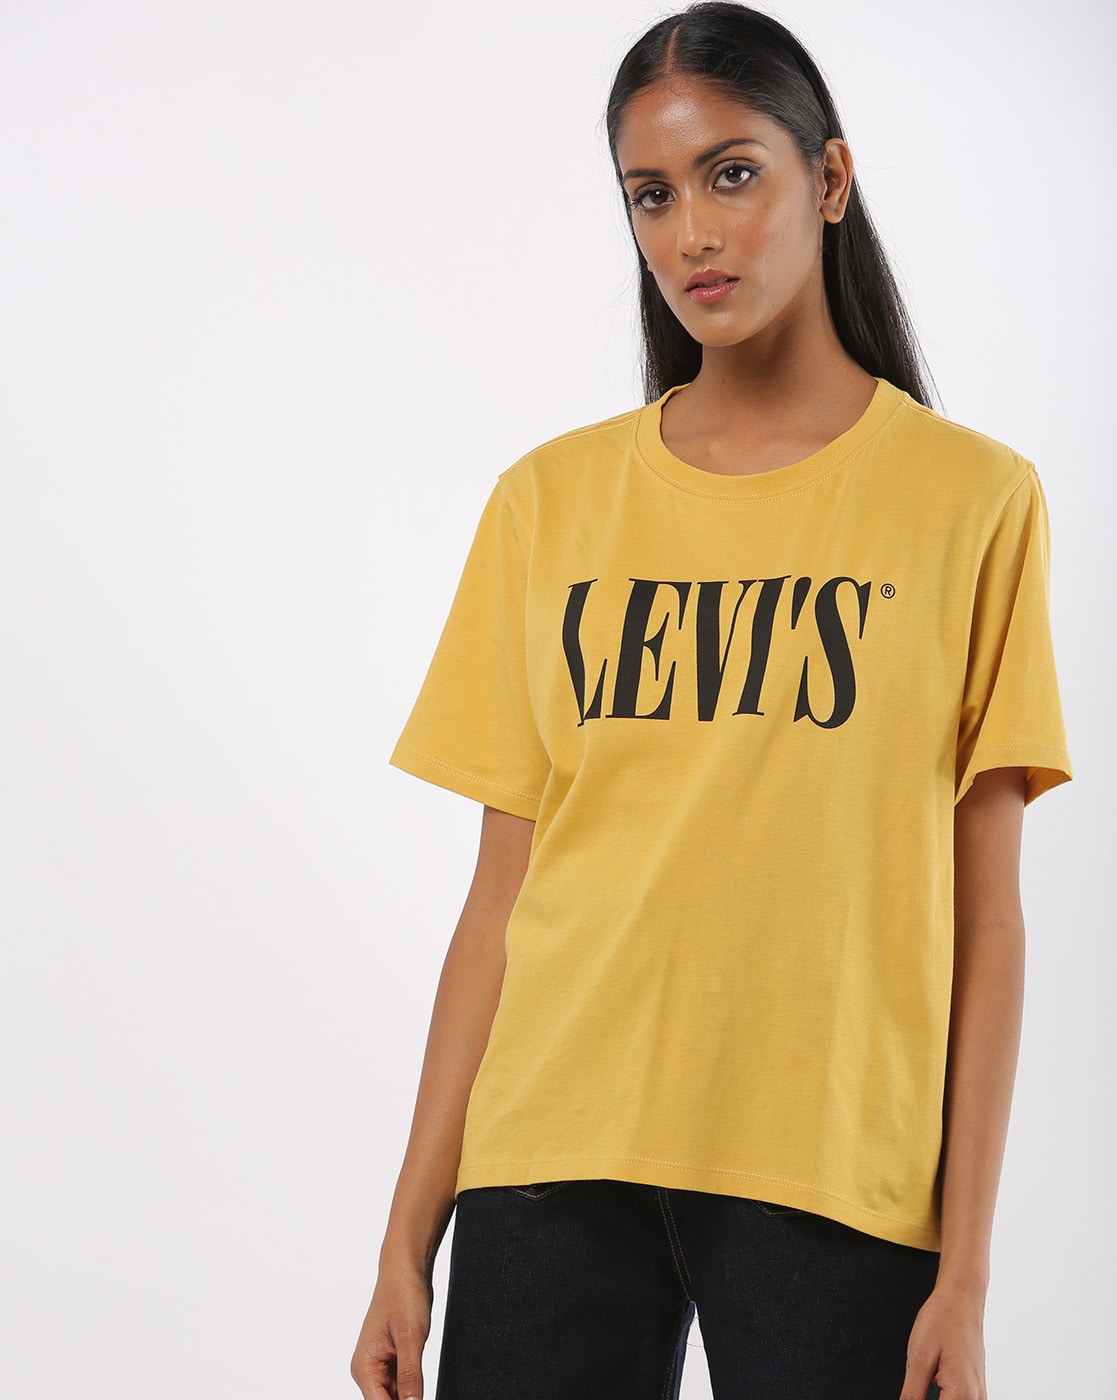 levis yellow t shirt women's